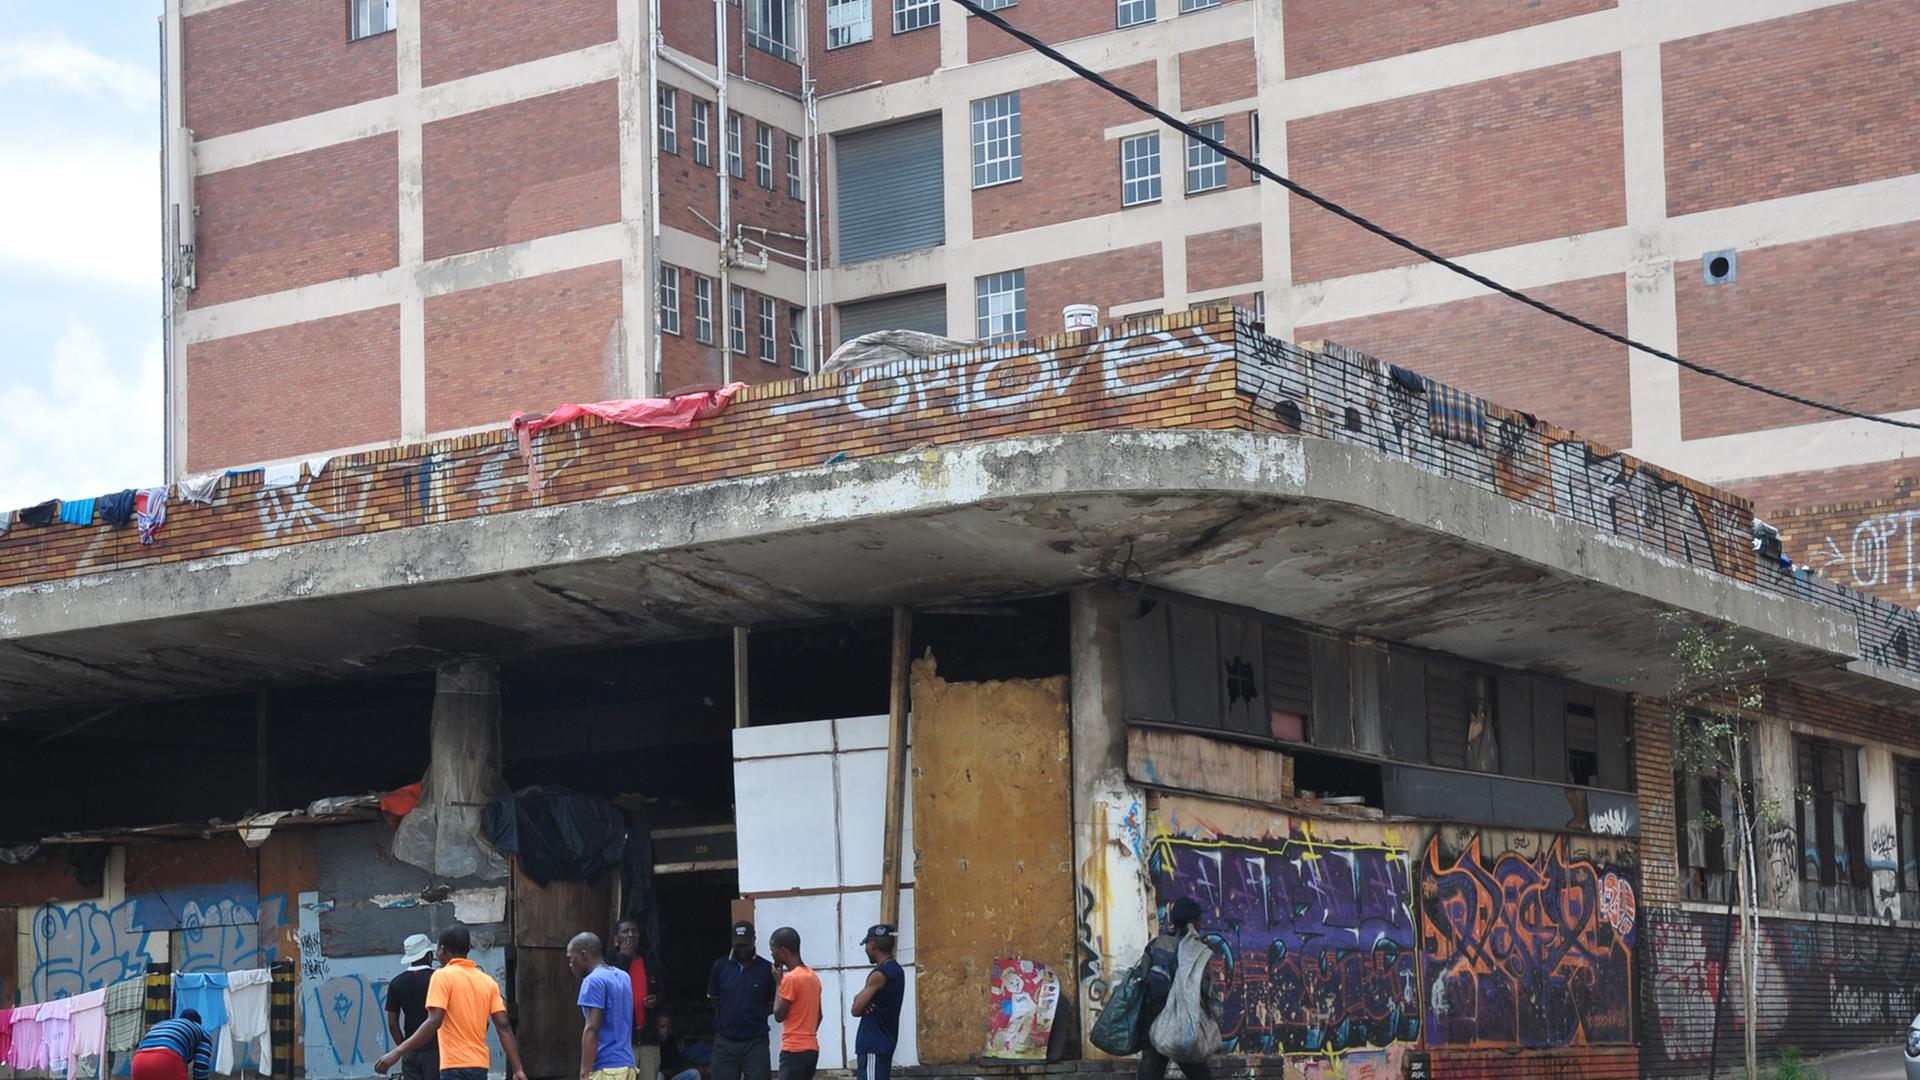 Ein besetztes Gebäude auf der Foxstreet in Johannesburg, Südafrika NUR FÜR CORSO SPEZIAL JOHANNESBURG 09.06.14 verwenden!